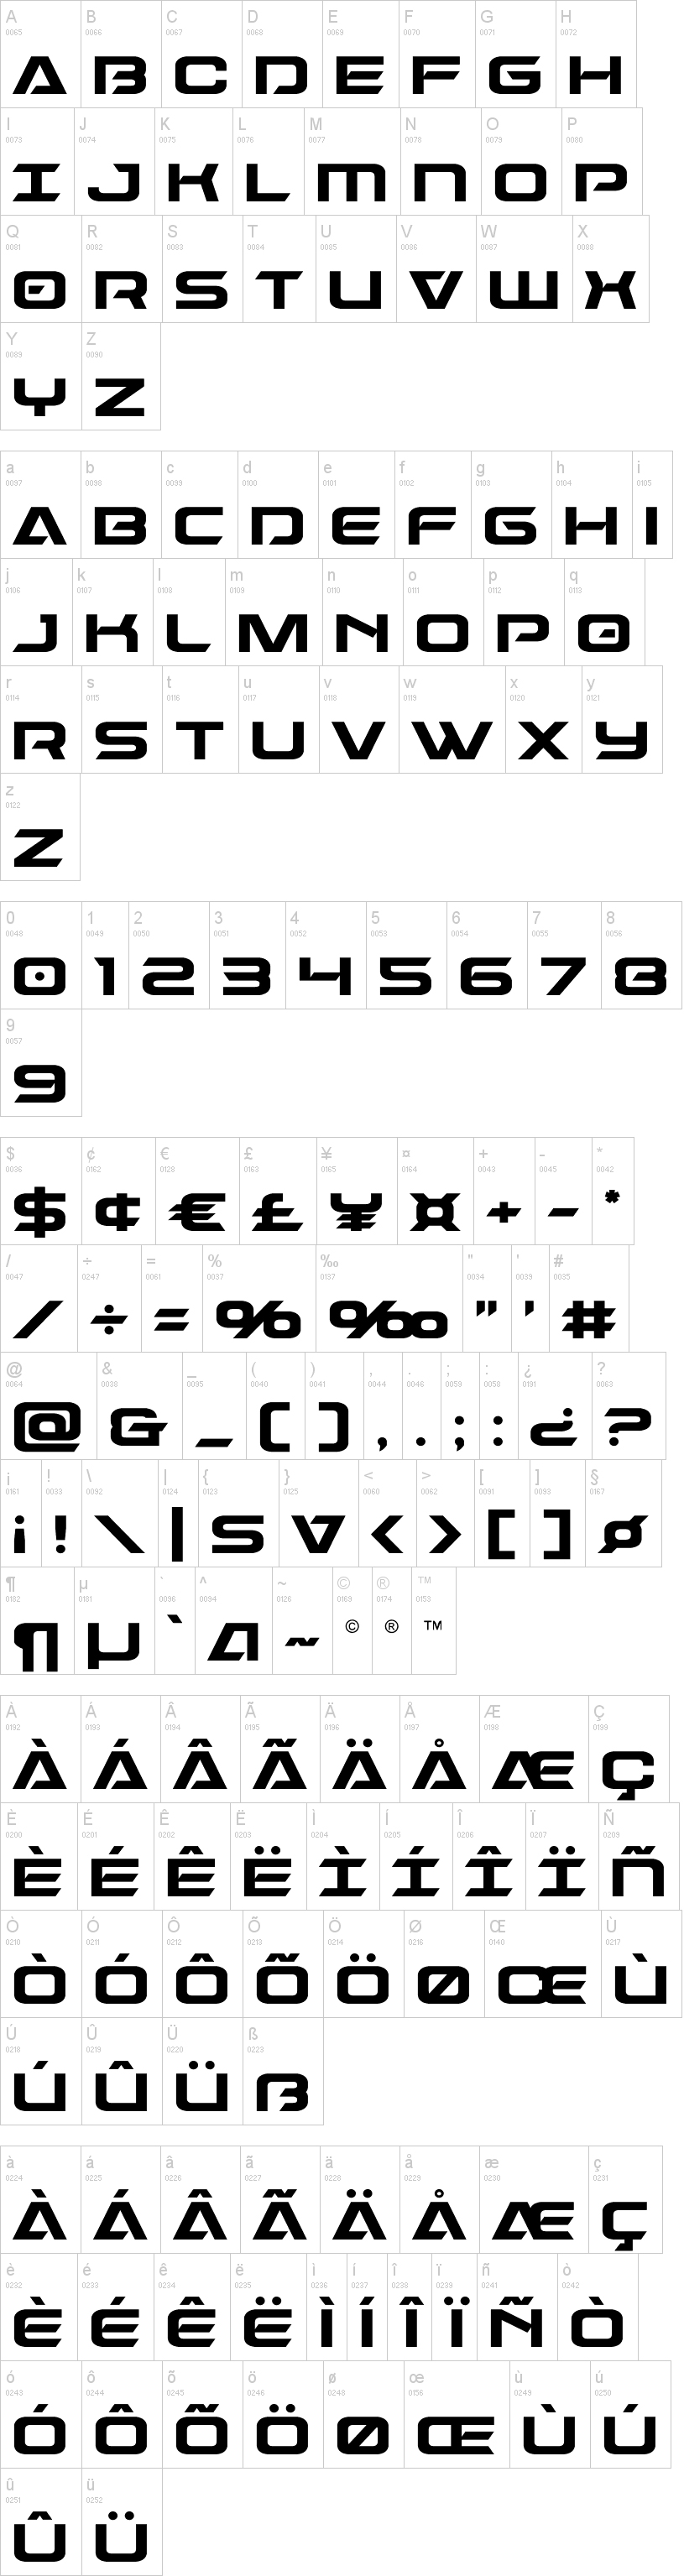 tipografia dameron abecedario alfabeto